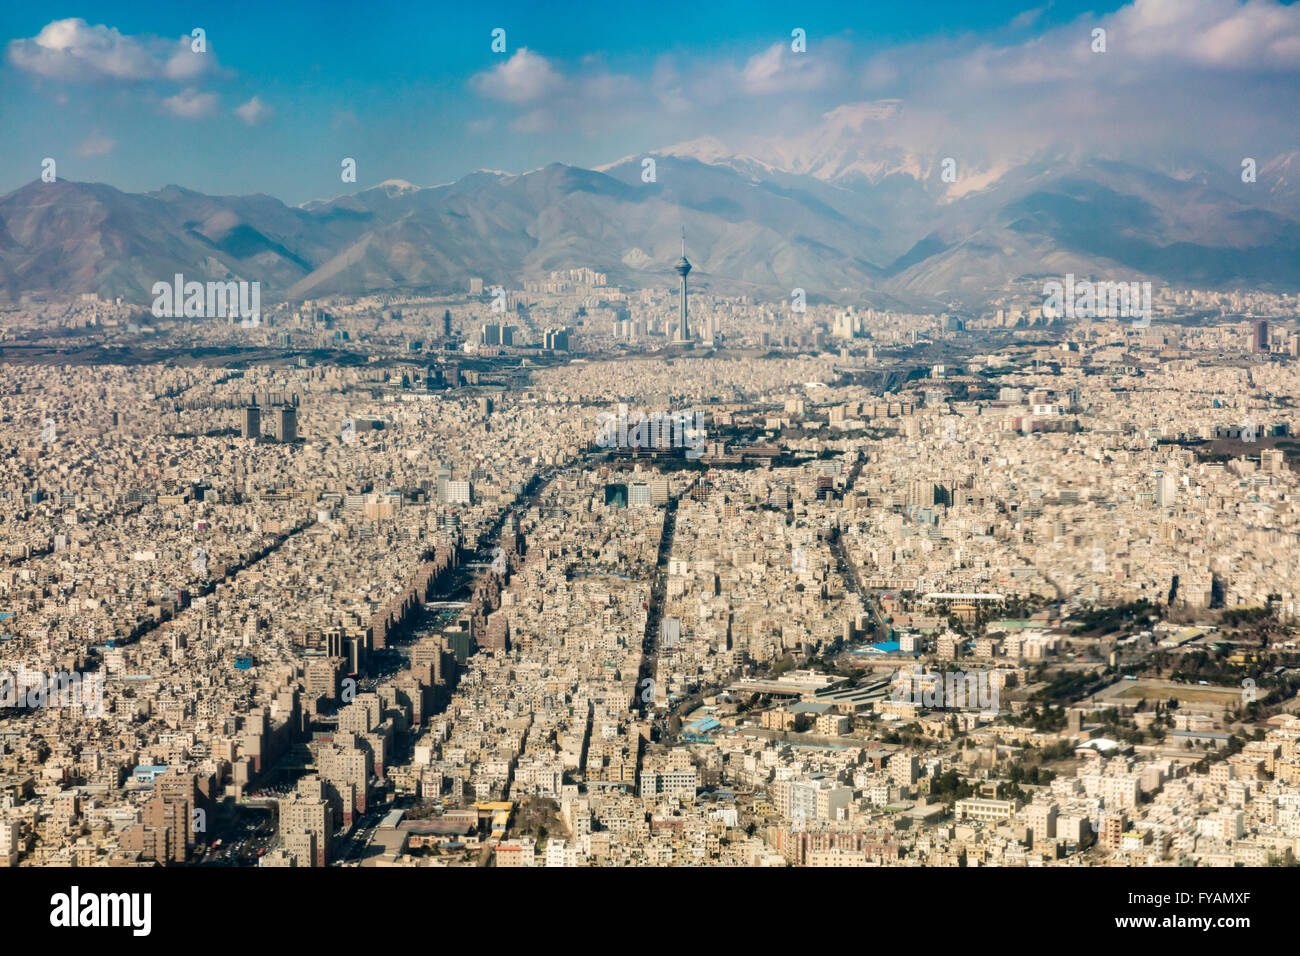 Vista aerea del calcestruzzo proliferazione di Tehran, Iran con le vette delle montagne Alborz in background Foto Stock